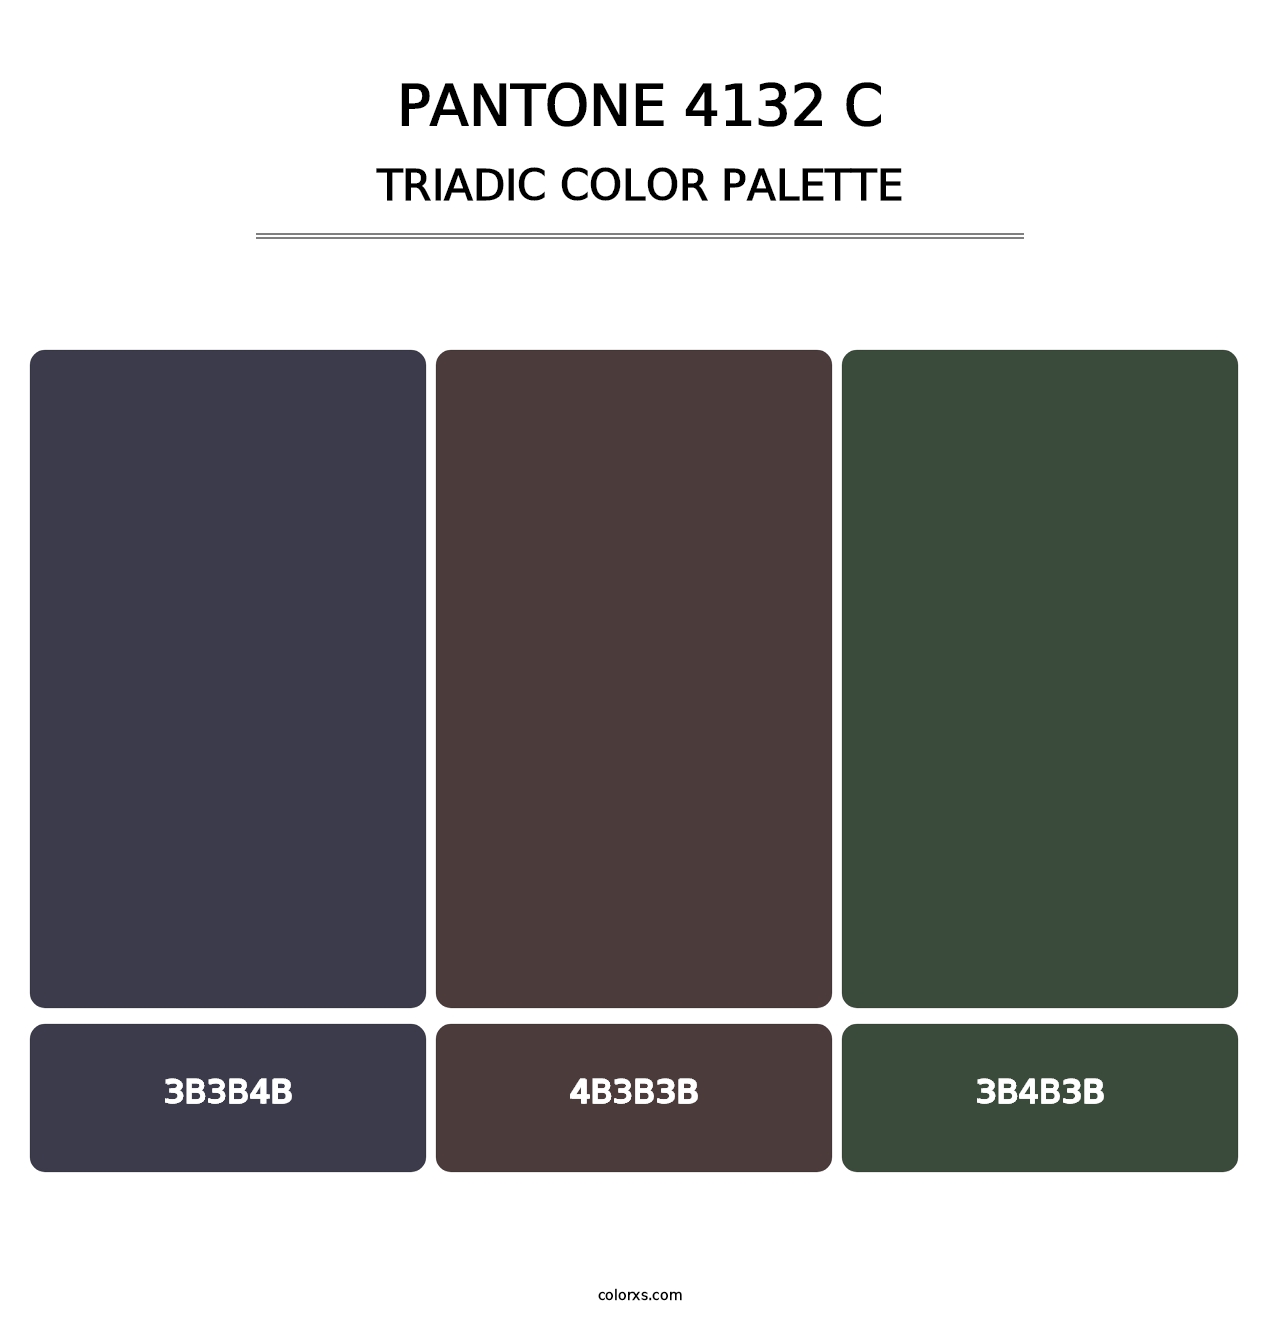 PANTONE 4132 C - Triadic Color Palette